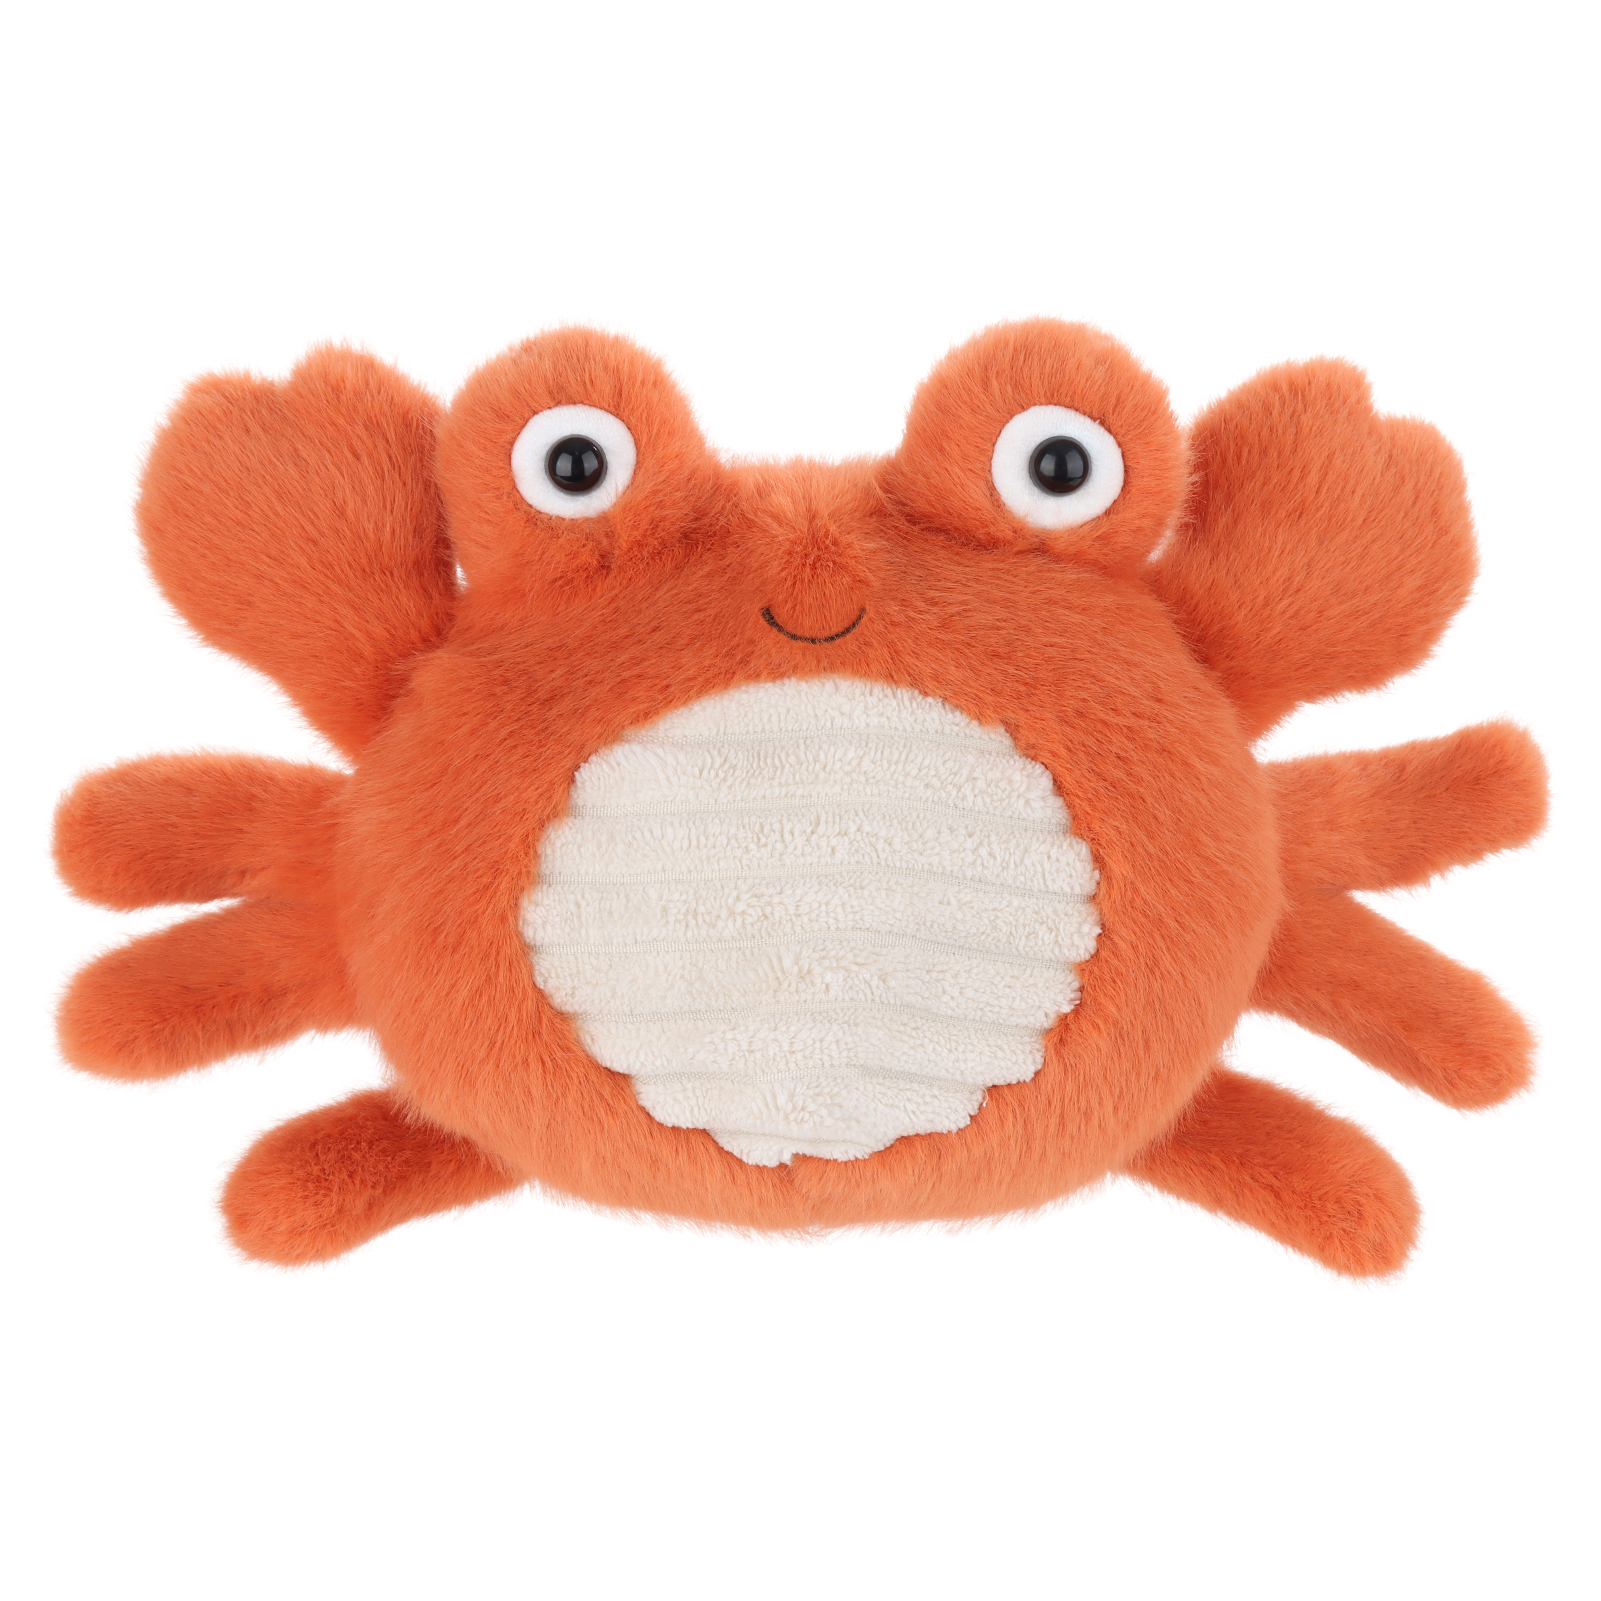 Apricot Lamb Happy Crab Stuffed Animal Soft Plush խաղալիքներ